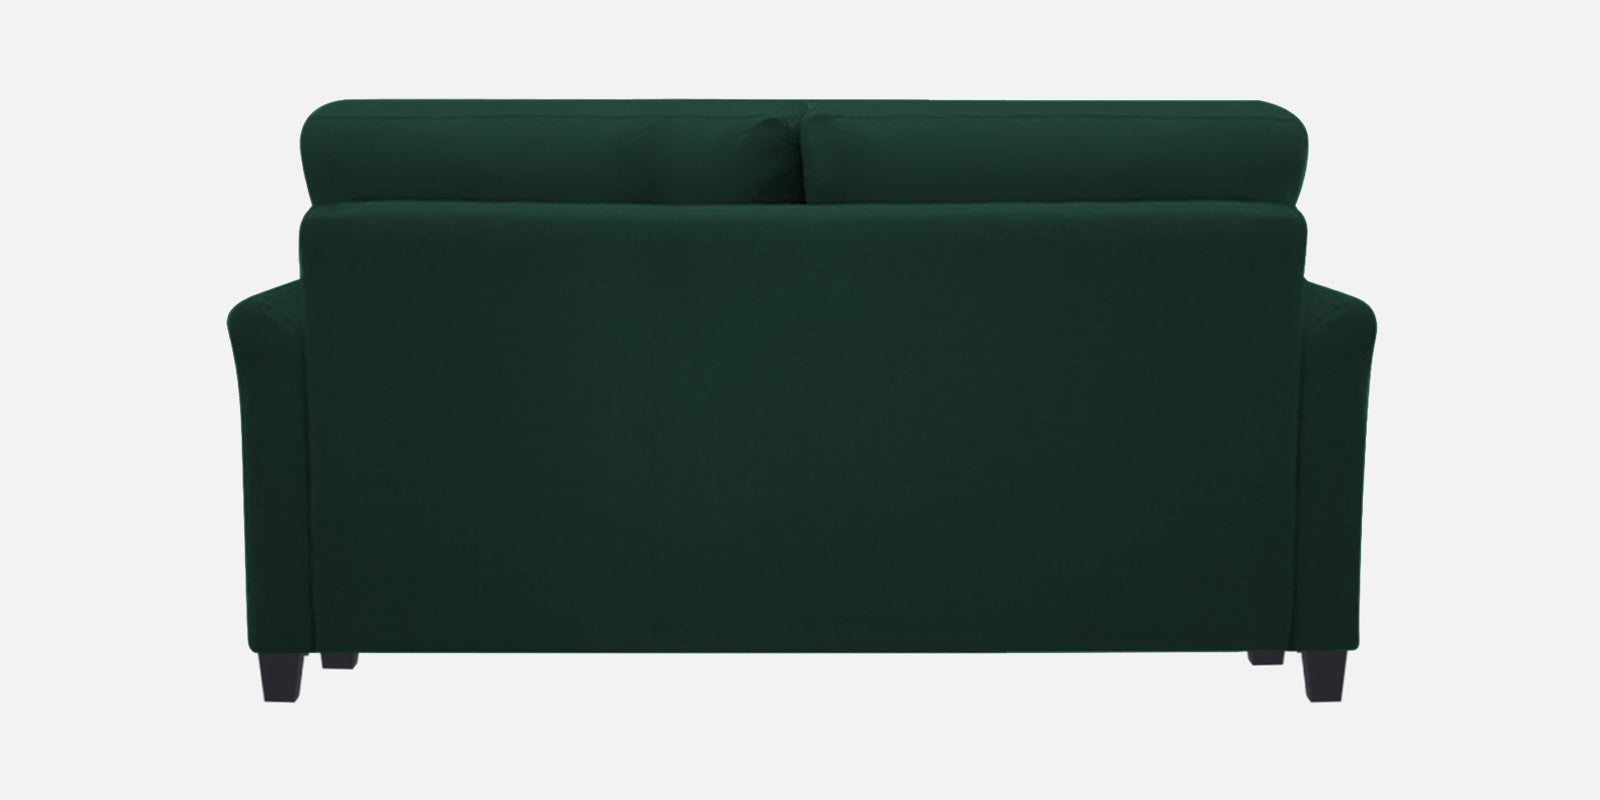 Daroo Velvet 2 Seater Sofa In Forest Green Colour